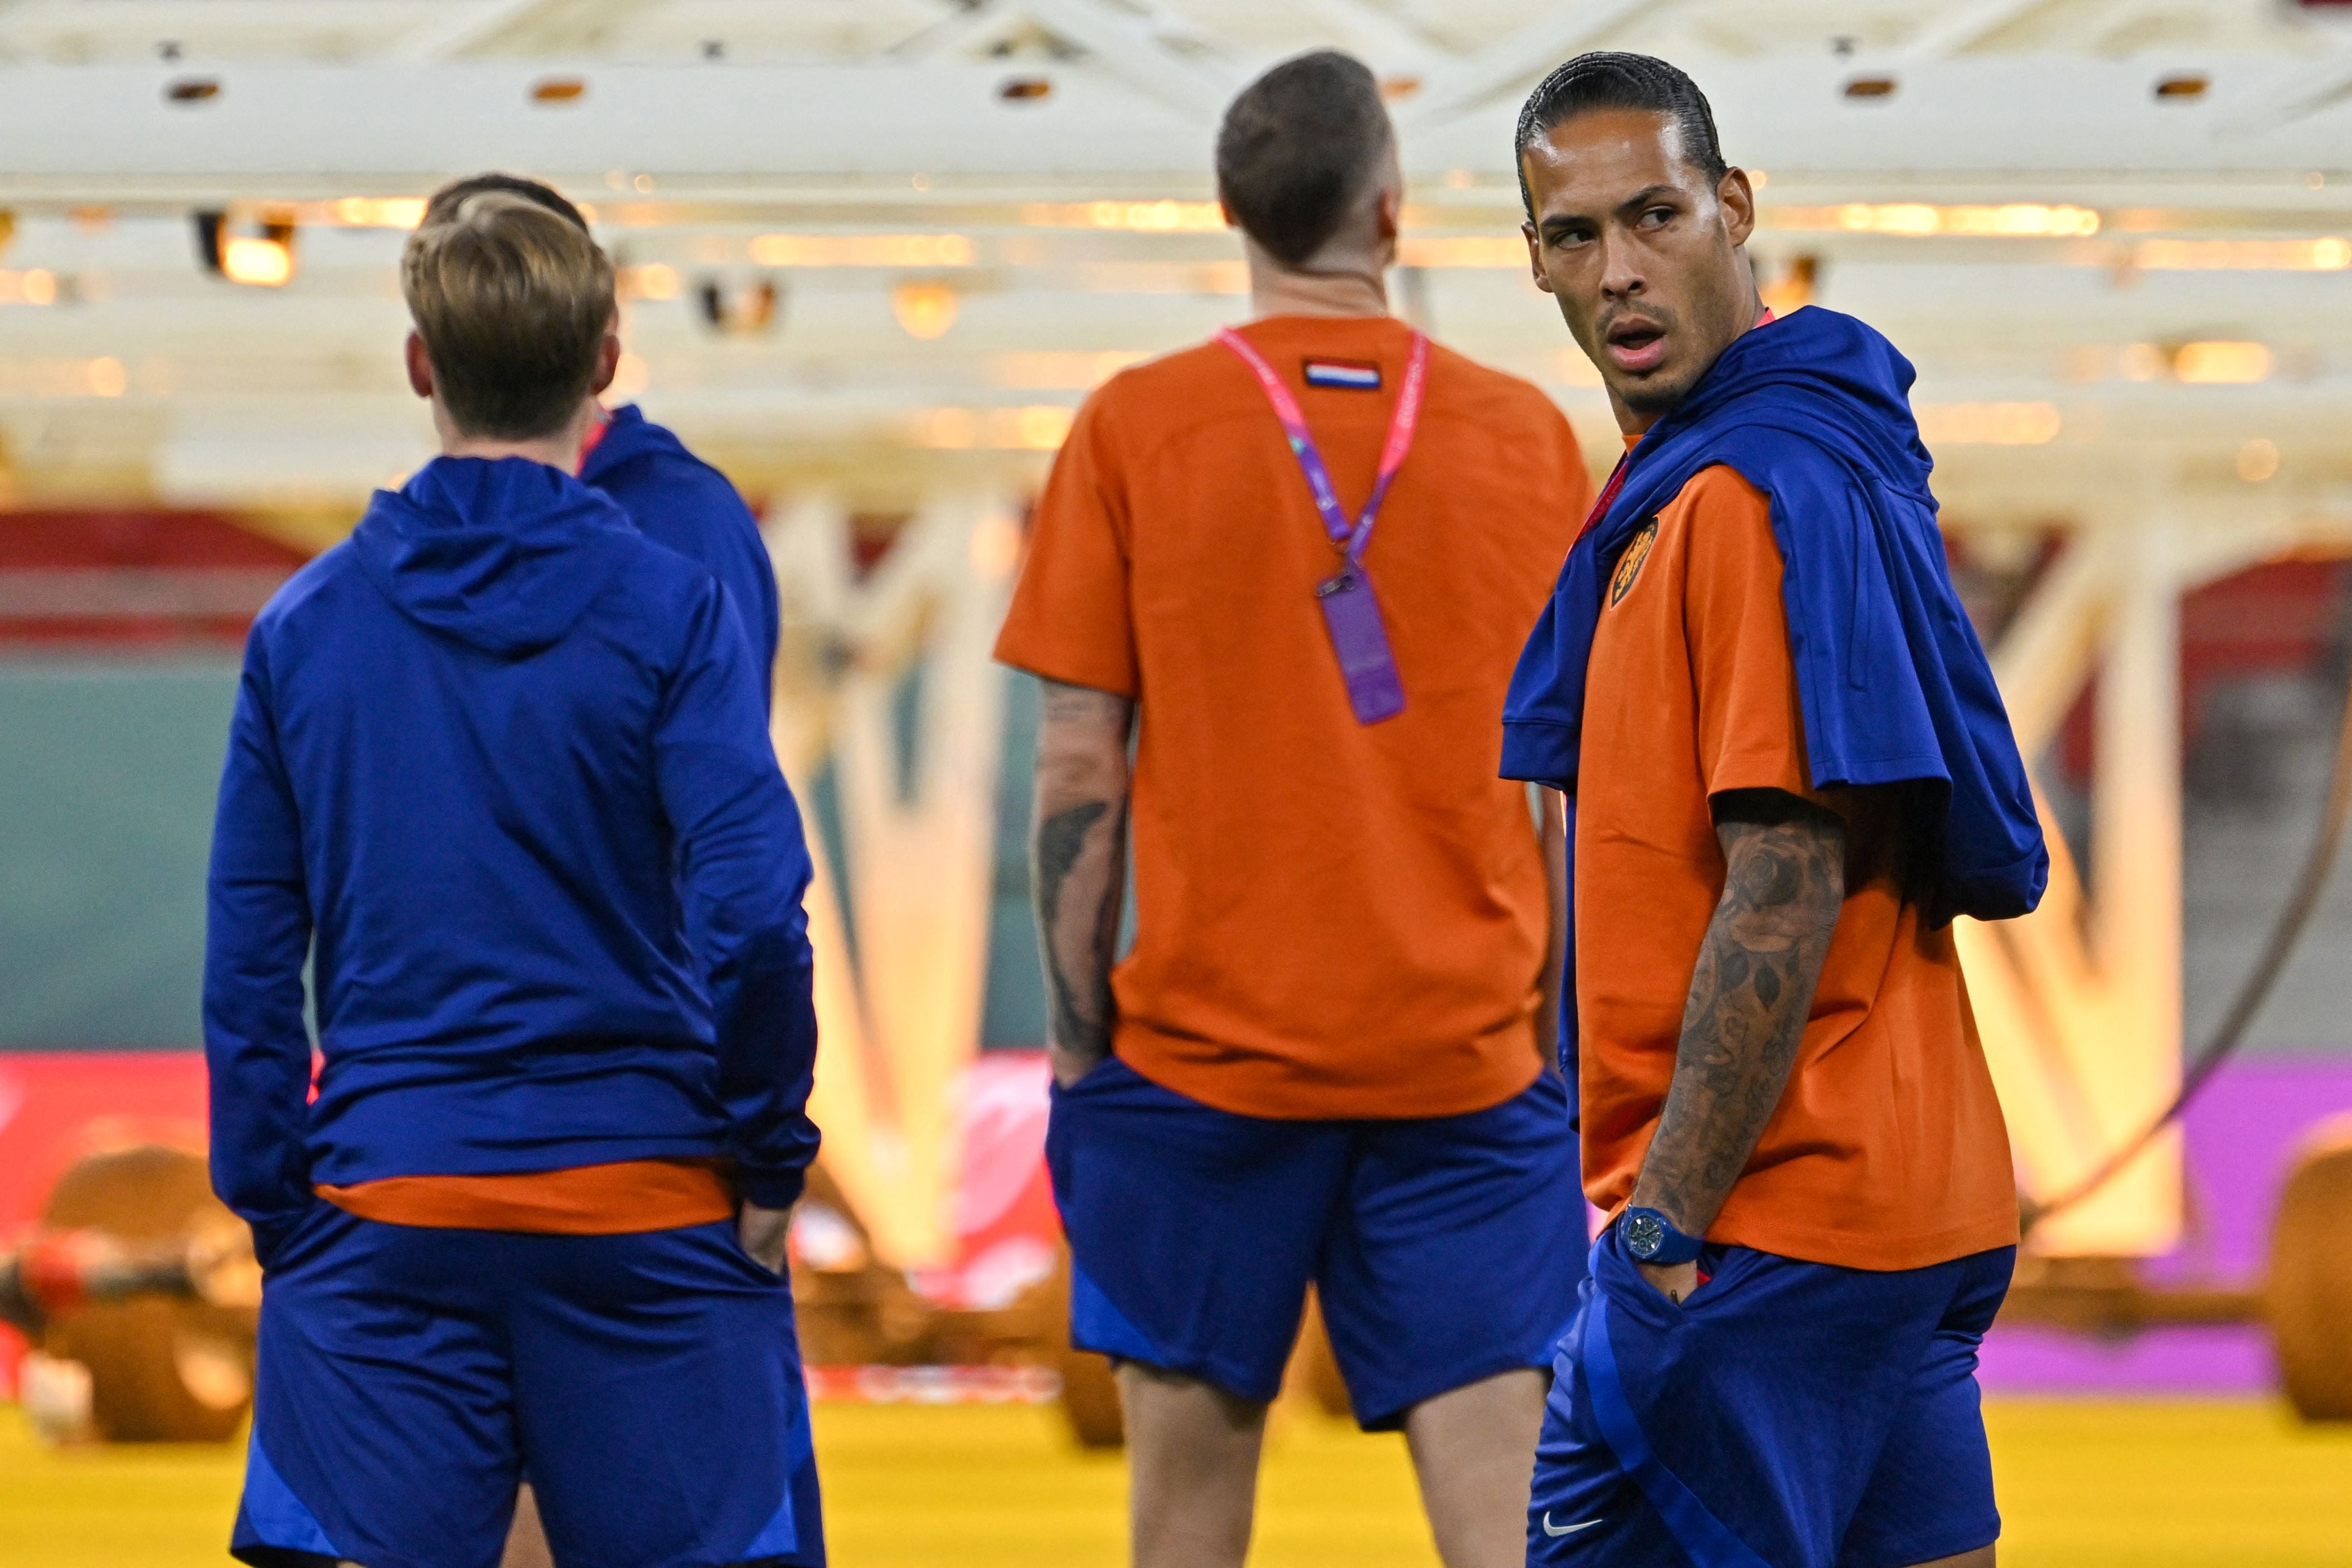 Liverpool defender Virgil van Dijk (right) starts for the Netherlands